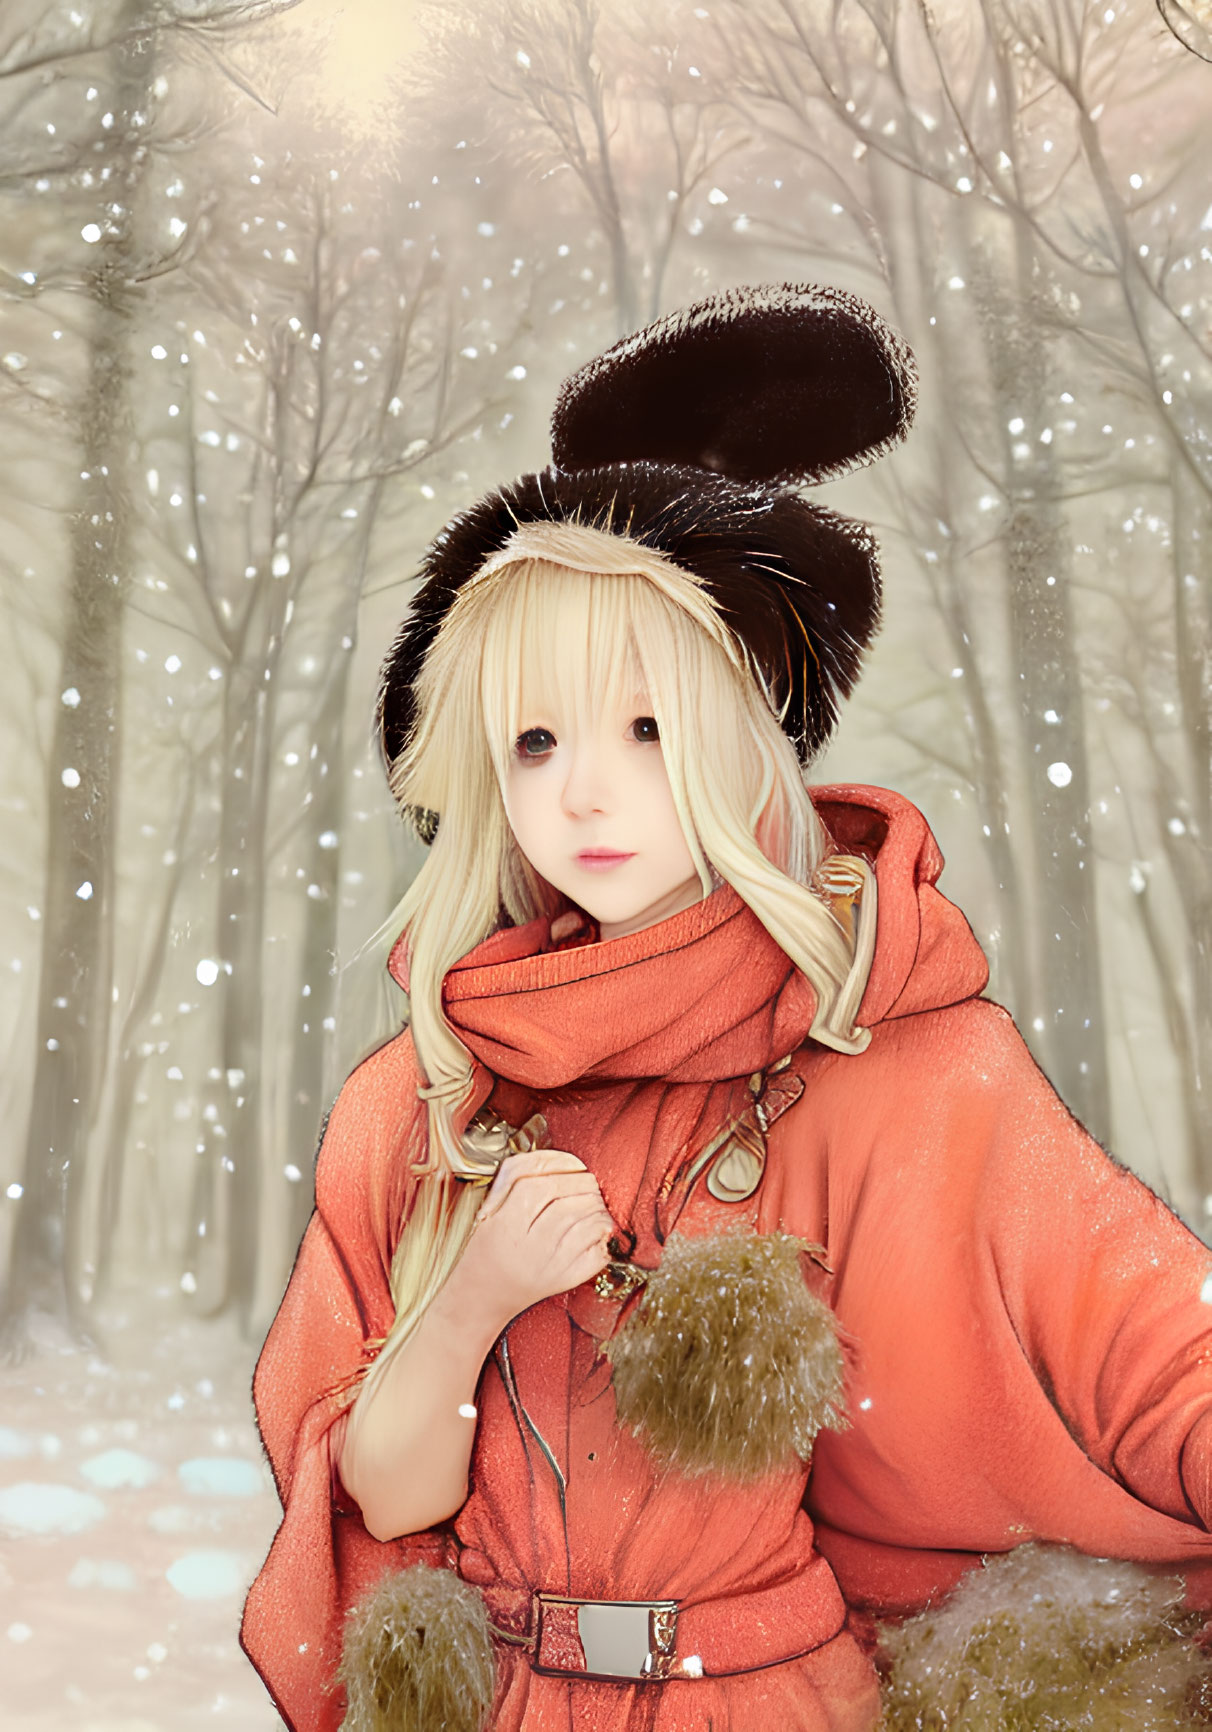 Blonde Woman in Orange Coat in Snowy Forest